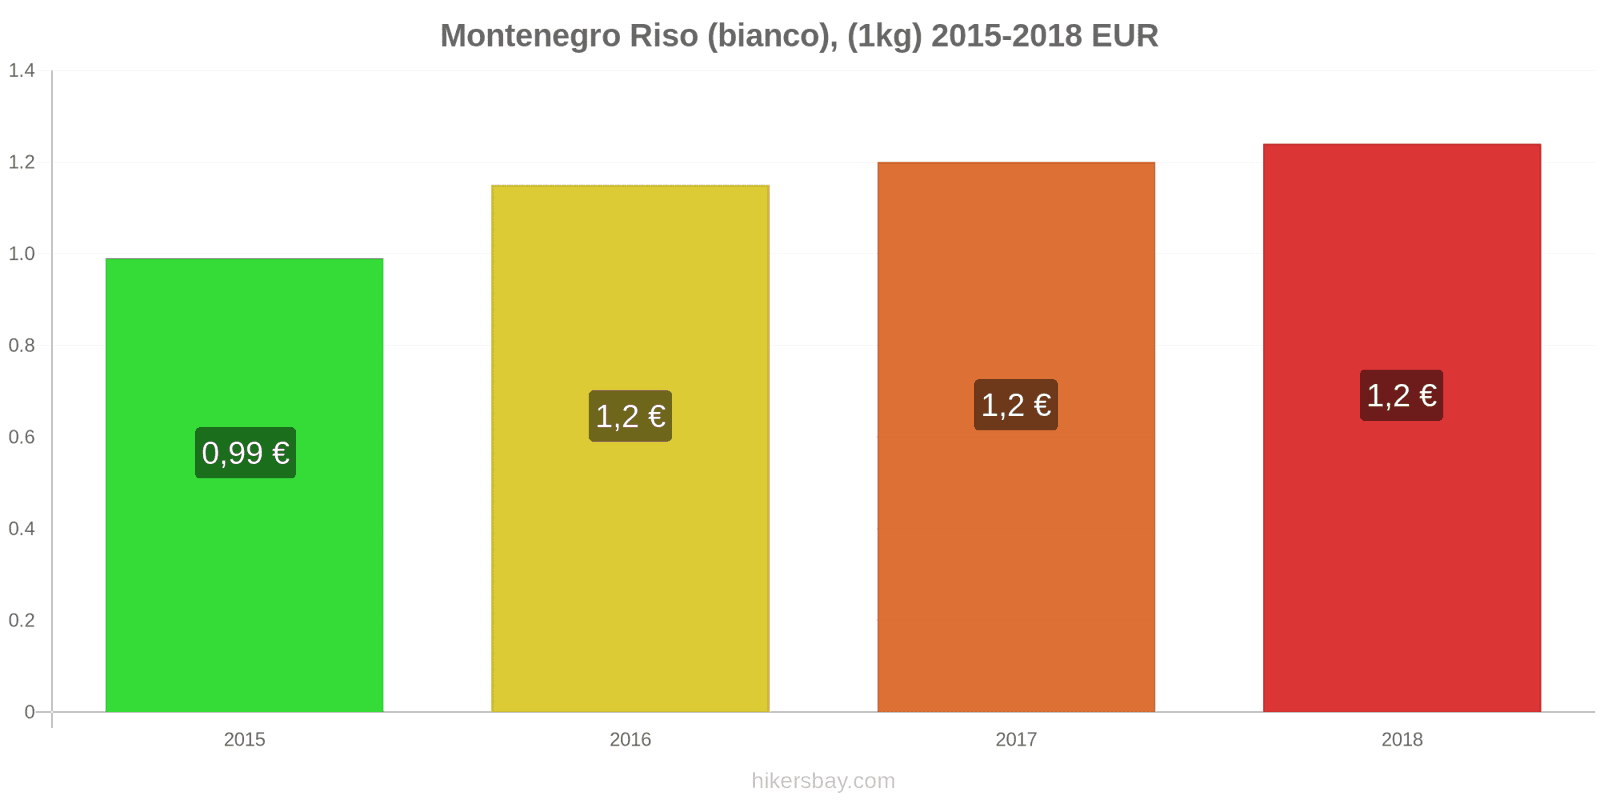 Montenegro cambi di prezzo Chilo di riso bianco hikersbay.com